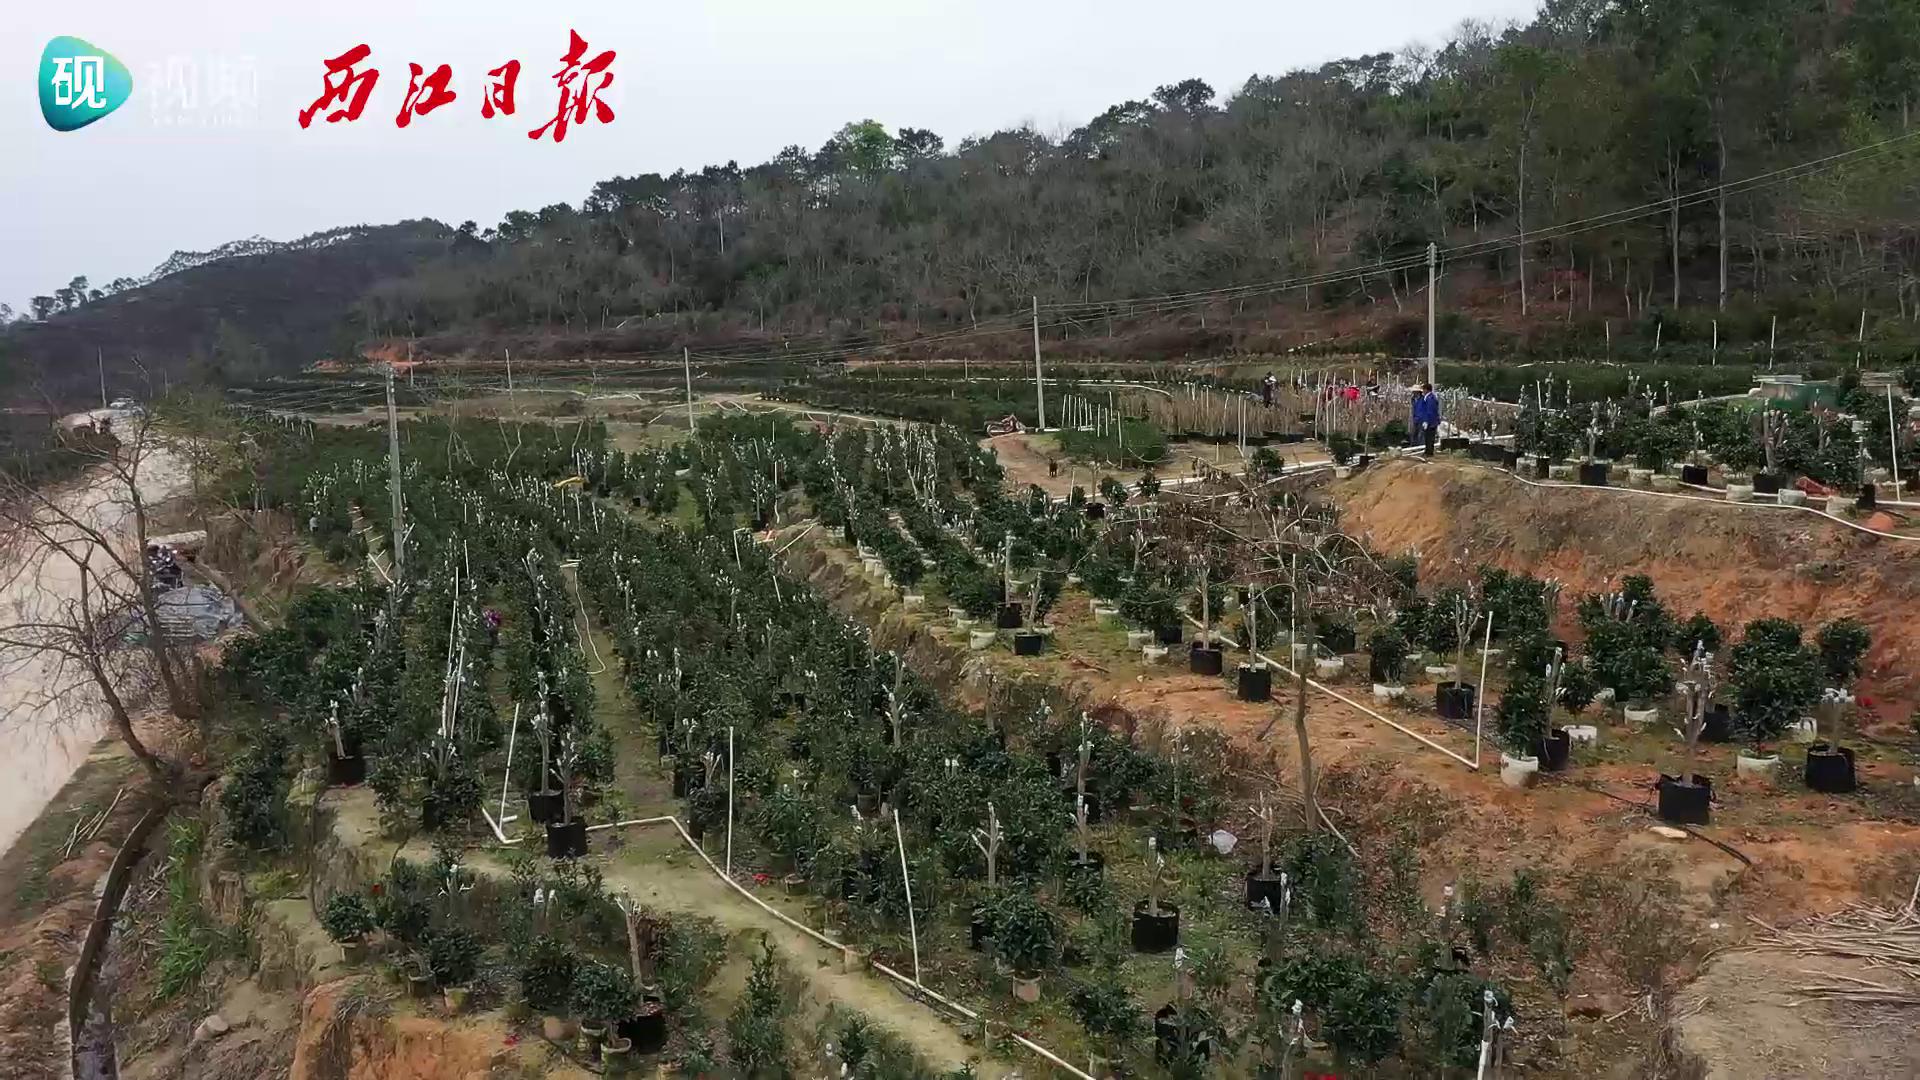 四季茶花里的“致富经”——德庆县莫村镇四季茶花产业发展蓬勃助力乡村振兴